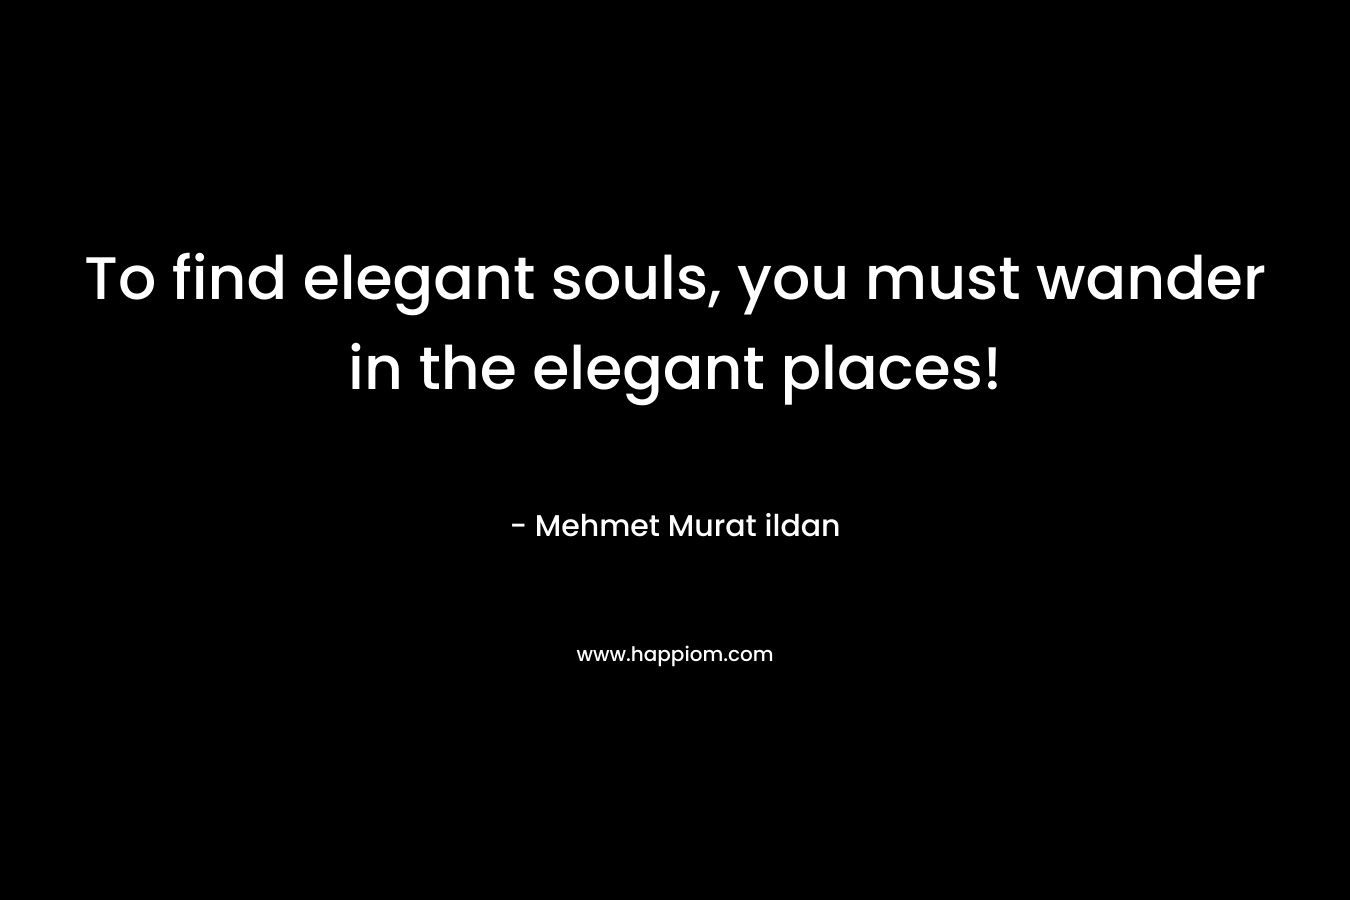 To find elegant souls, you must wander in the elegant places! – Mehmet Murat ildan